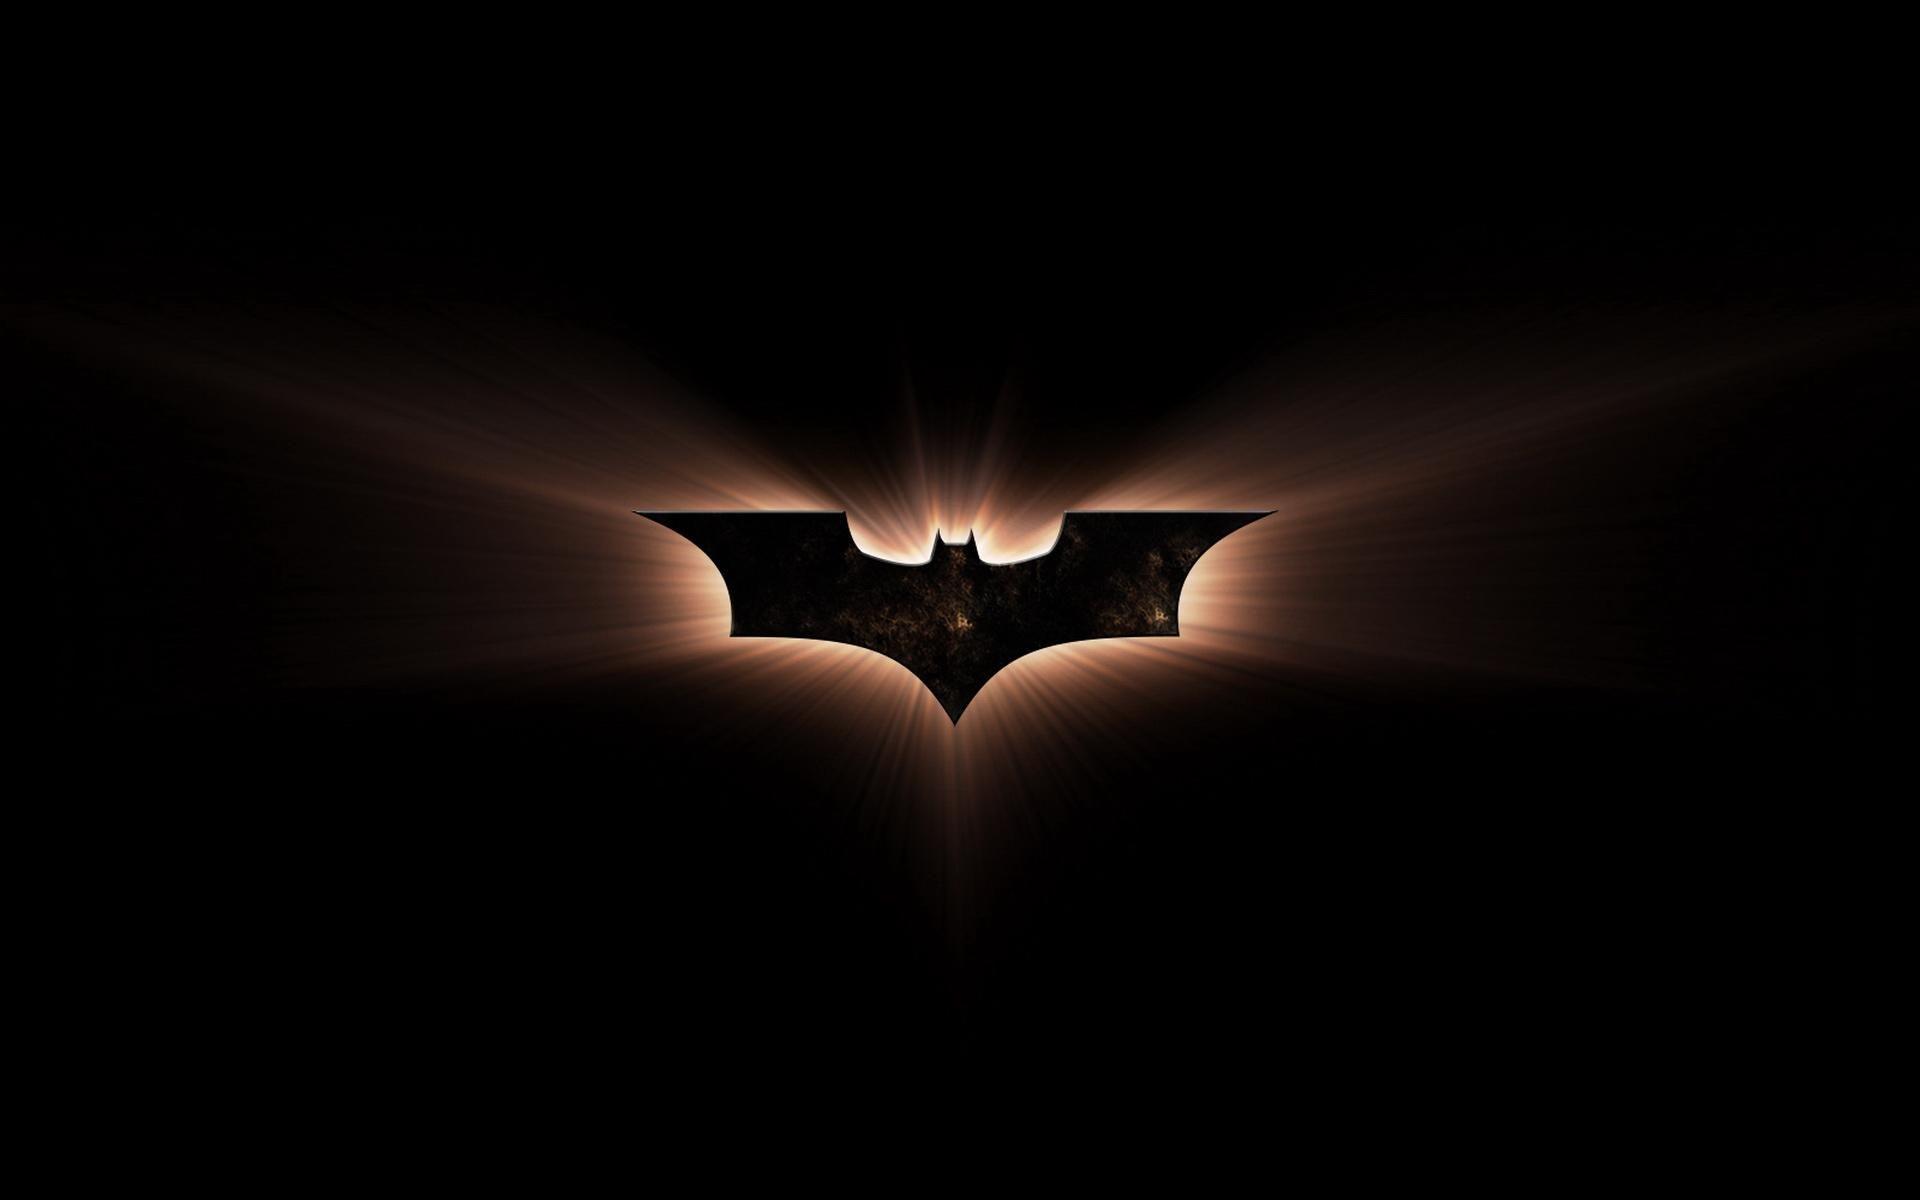 Batman Logo, Wallpaper, HD Image, Vectors Free Download